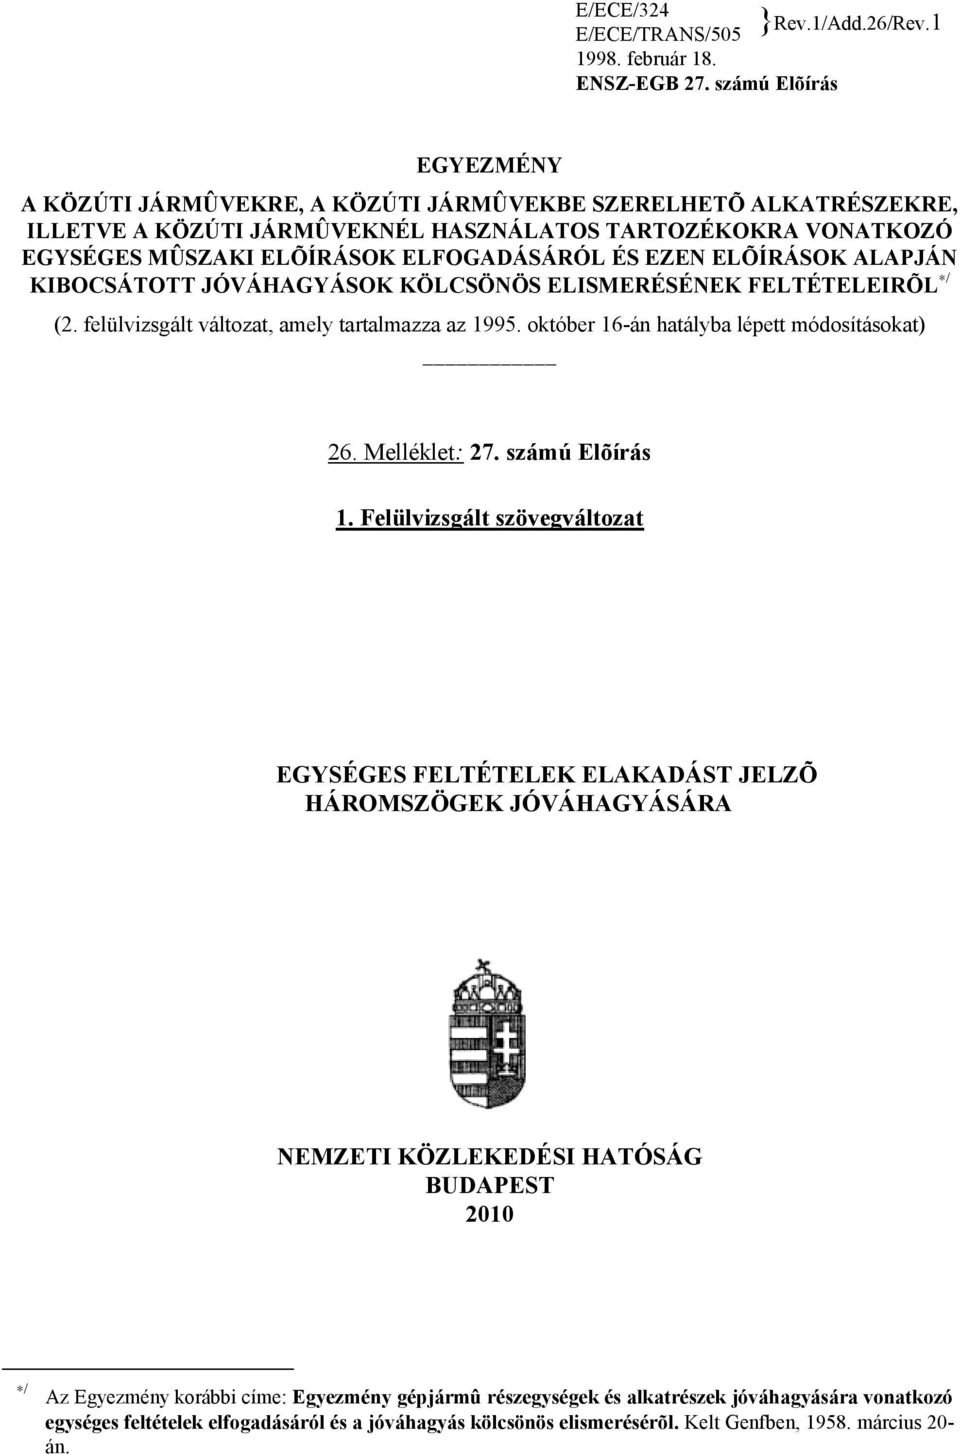 EZEN ELÕÍRÁSOK ALAPJÁN KIBOCSÁTOTT JÓVÁHAGYÁSOK KÖLCSÖNÖS ELISMERÉSÉNEK FELTÉTELEIRÕL / (2. felülvizsgált változat, amely tartalmazza az 1995. október 16-án hatályba lépett módosításokat) 26.